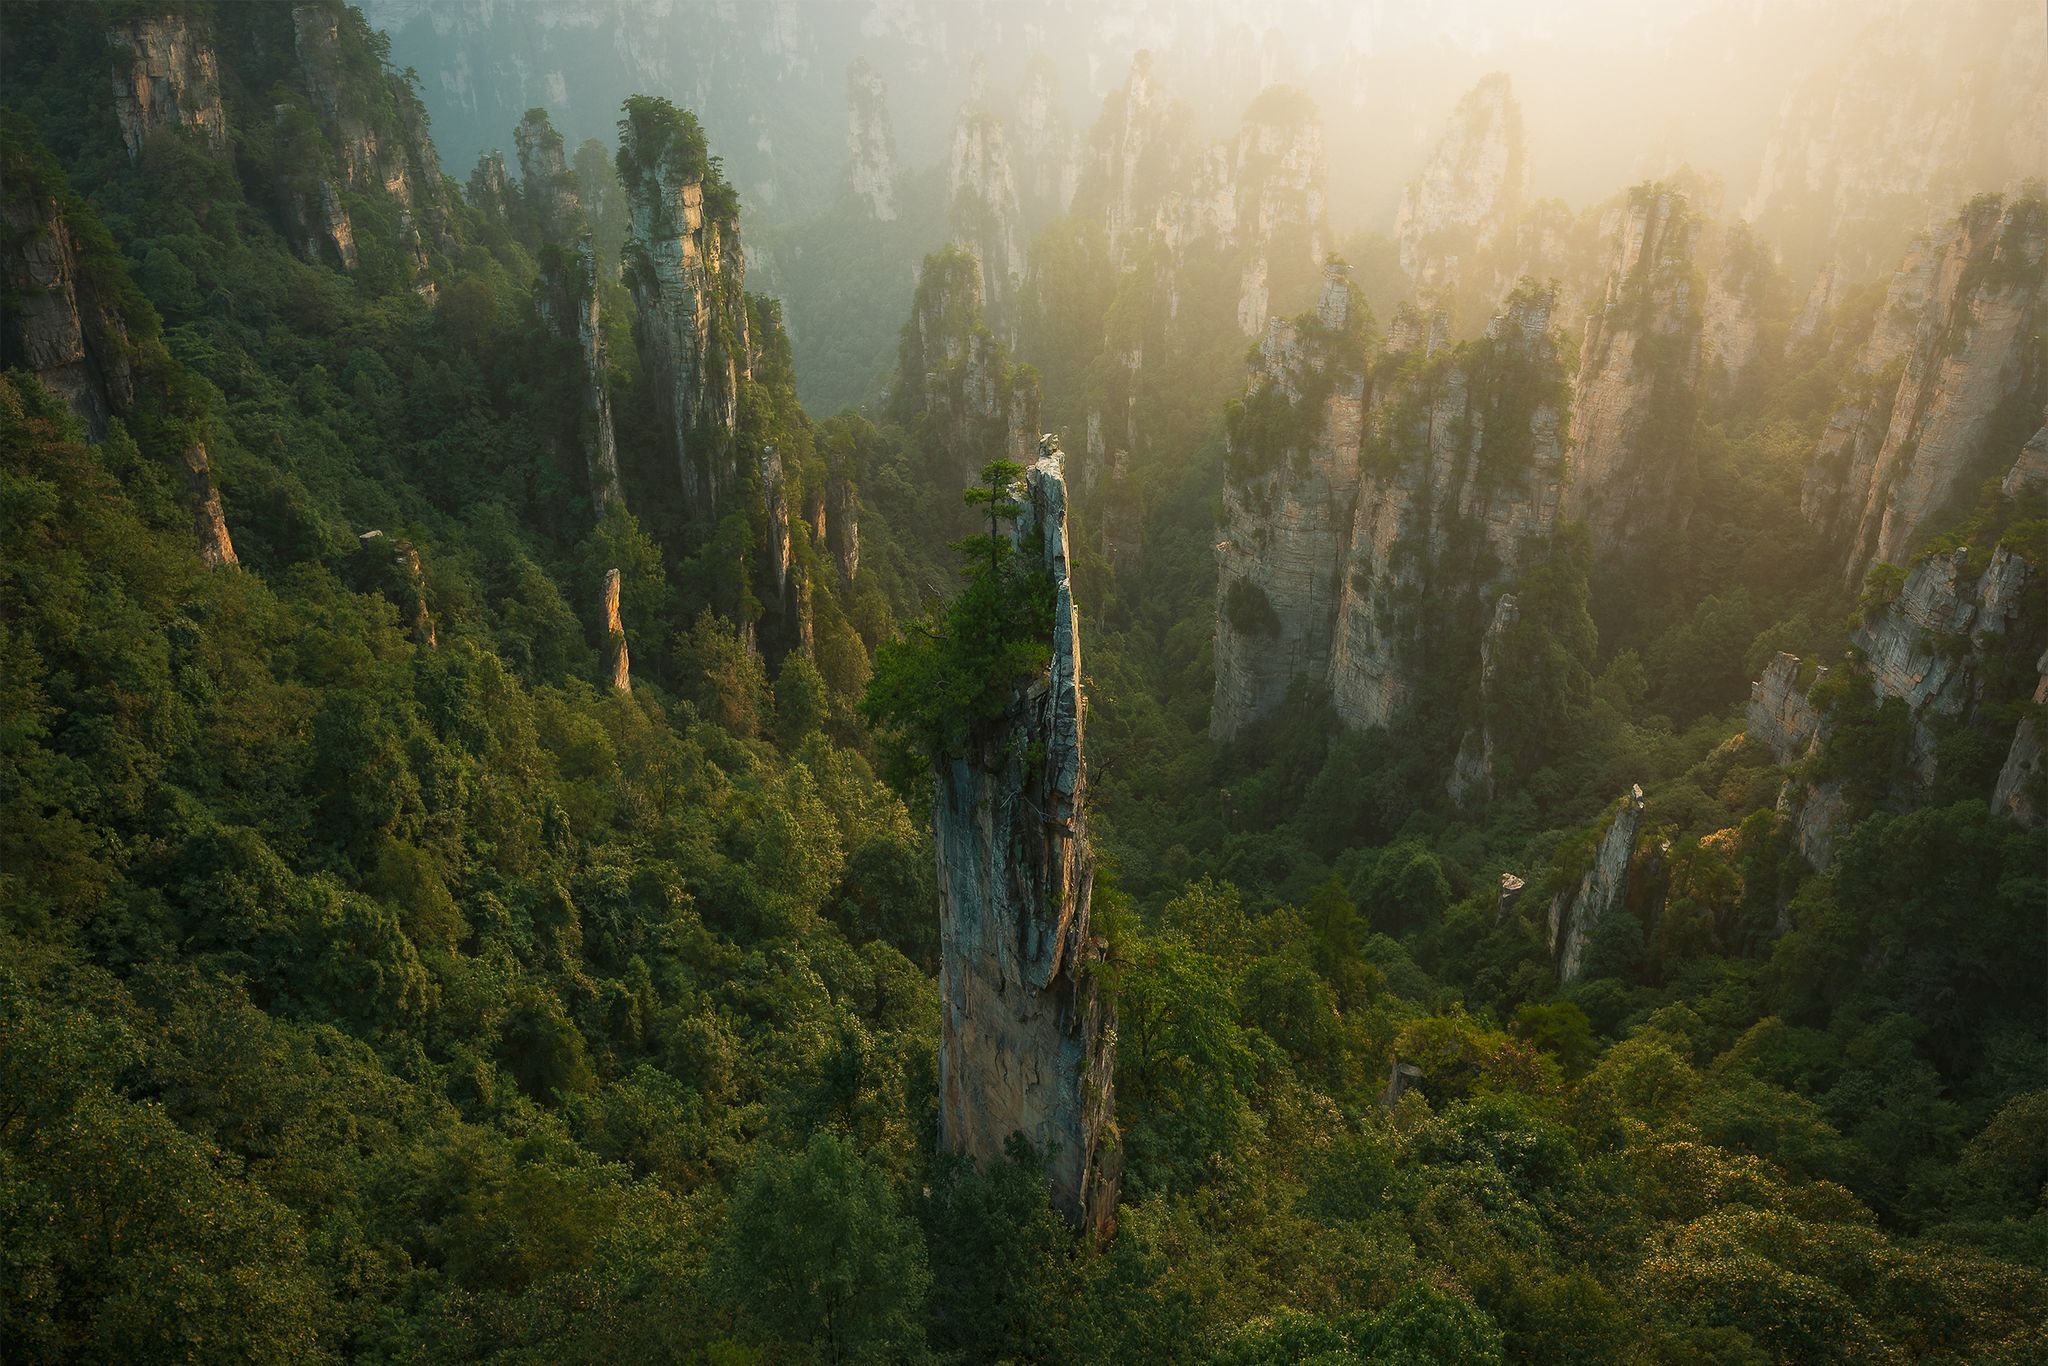  صخره‌های ستونی که از هزاران سال فرسایش پدید آمده‌اند در پارک ملی Zhangjiajie در هونان چین واقع شده‌اند. عکاس: ZHU XIAO